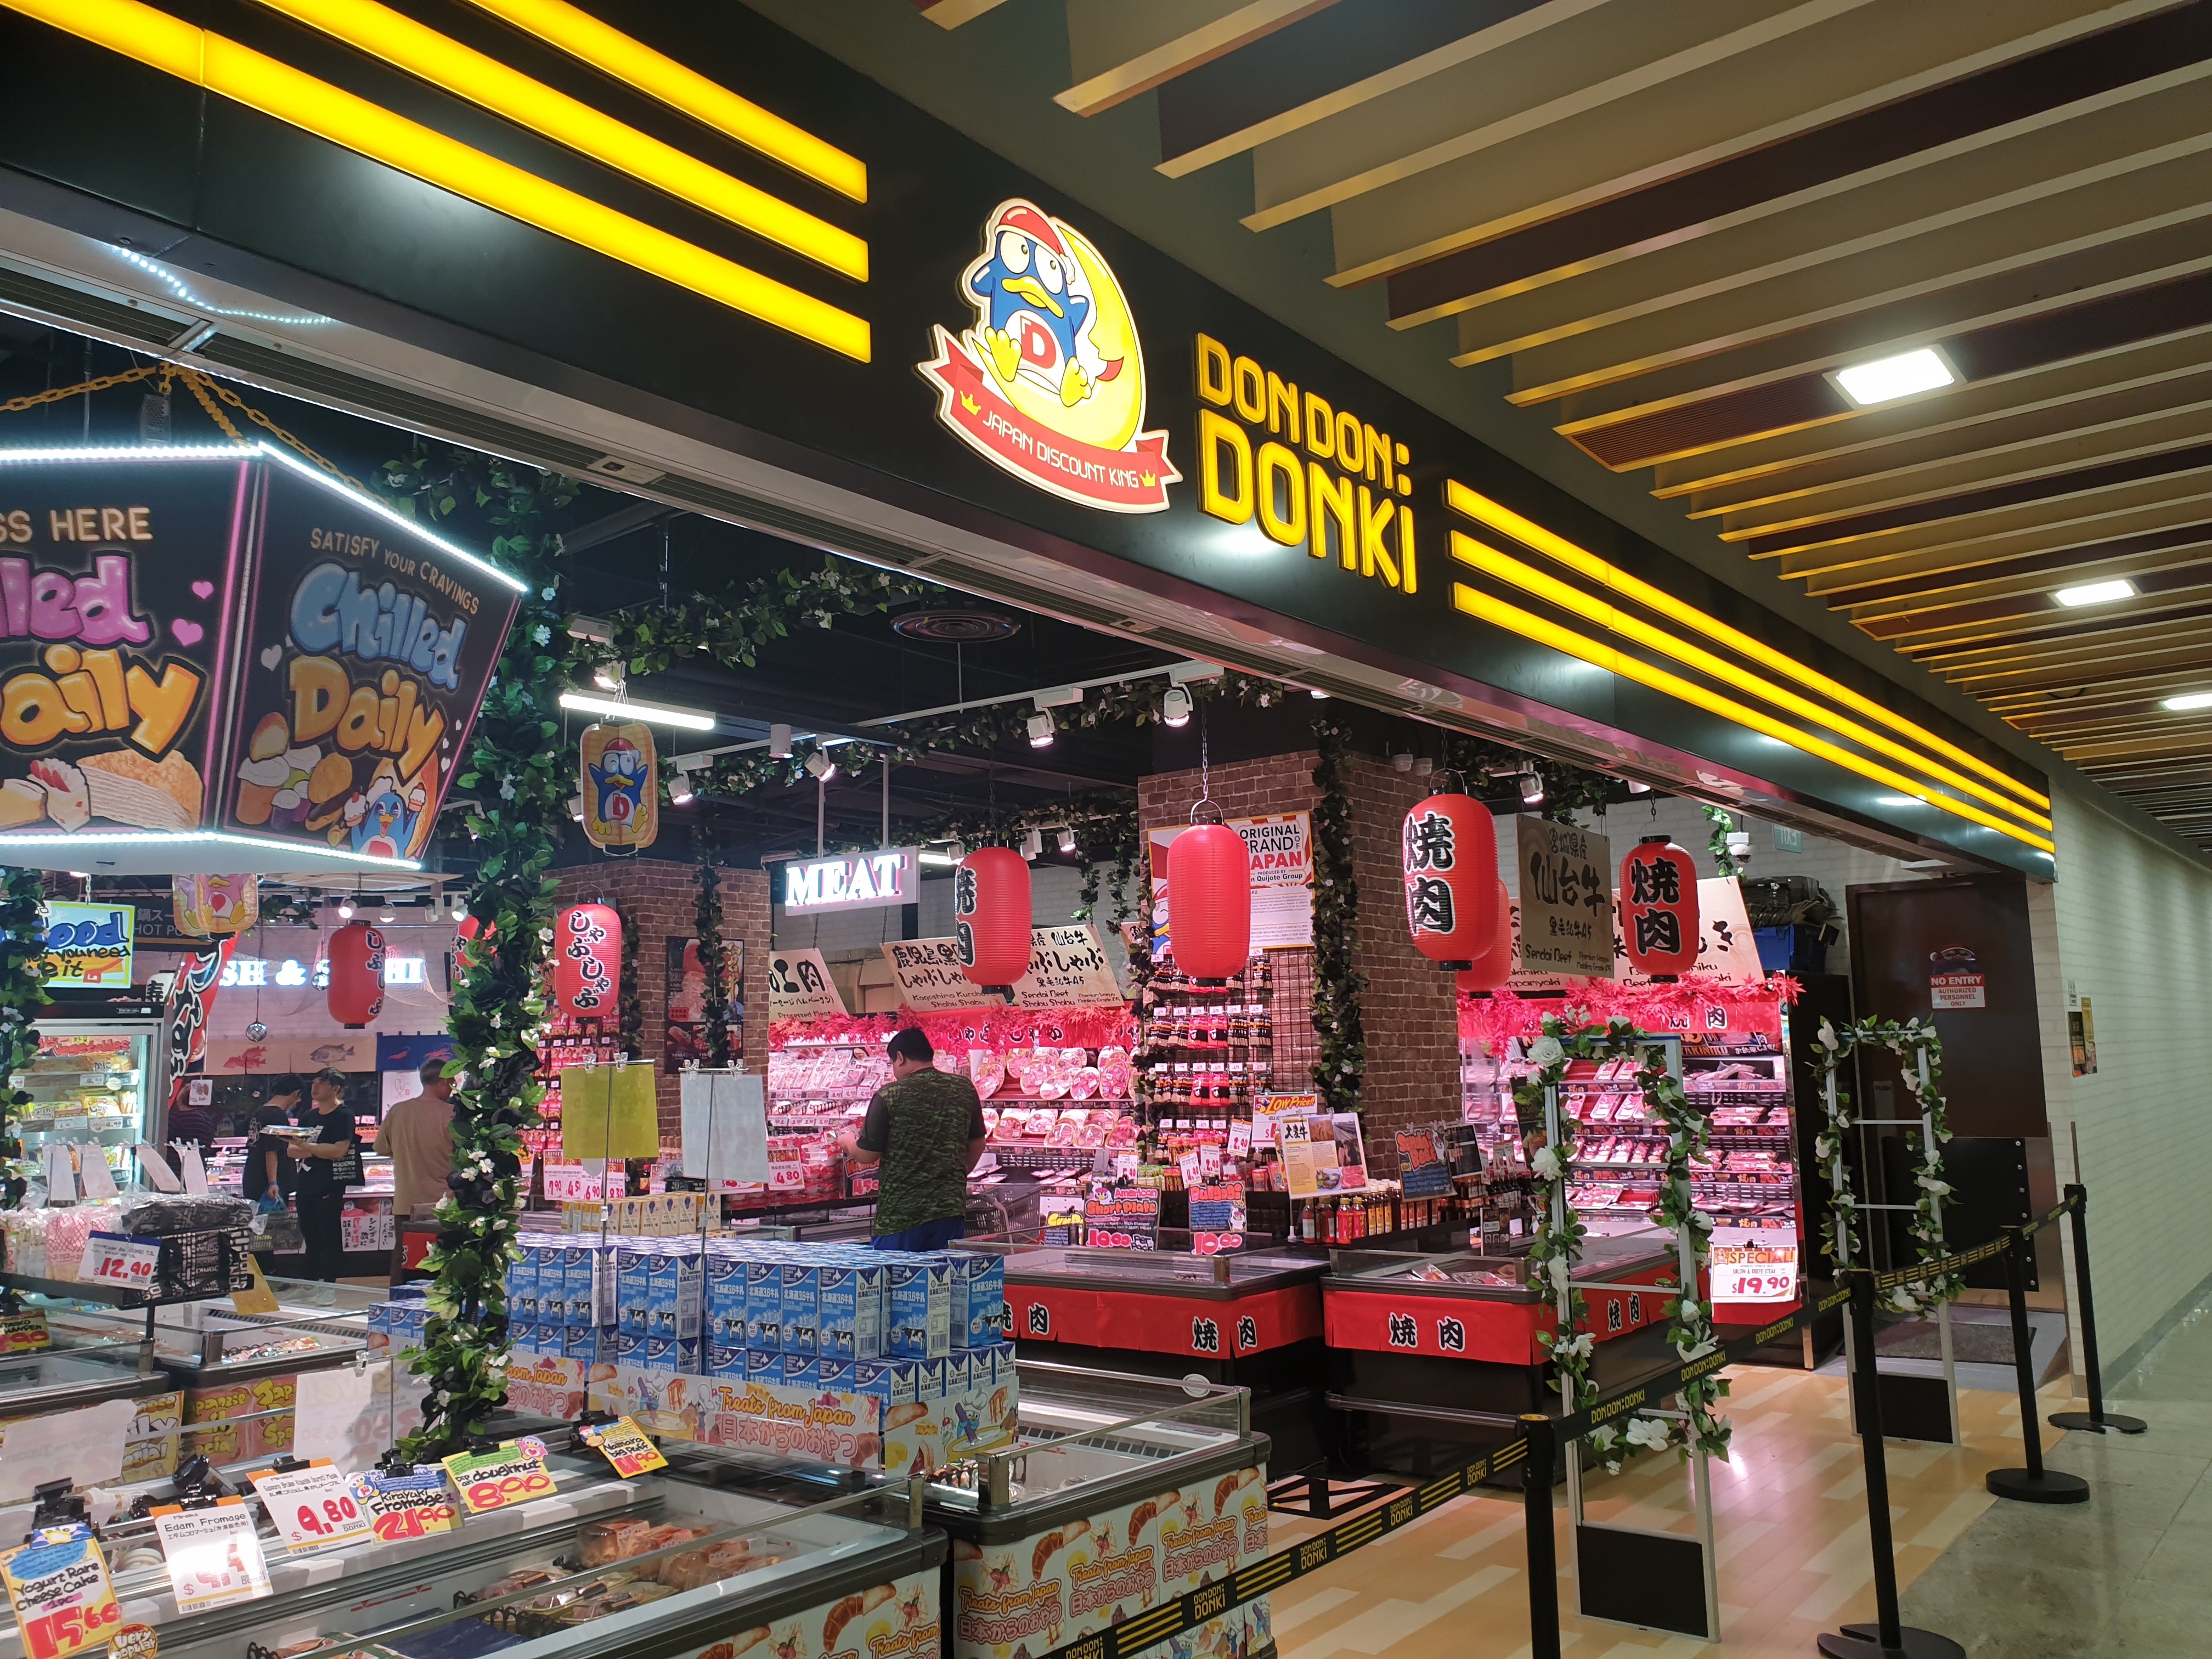 ⑩日系スーパーは伊勢丹、明治屋、ドンキがあちこちにあって、日本と全く変わらない食生活ができます。ドンキの多くは地下鉄の駅上にあり大変便利です。